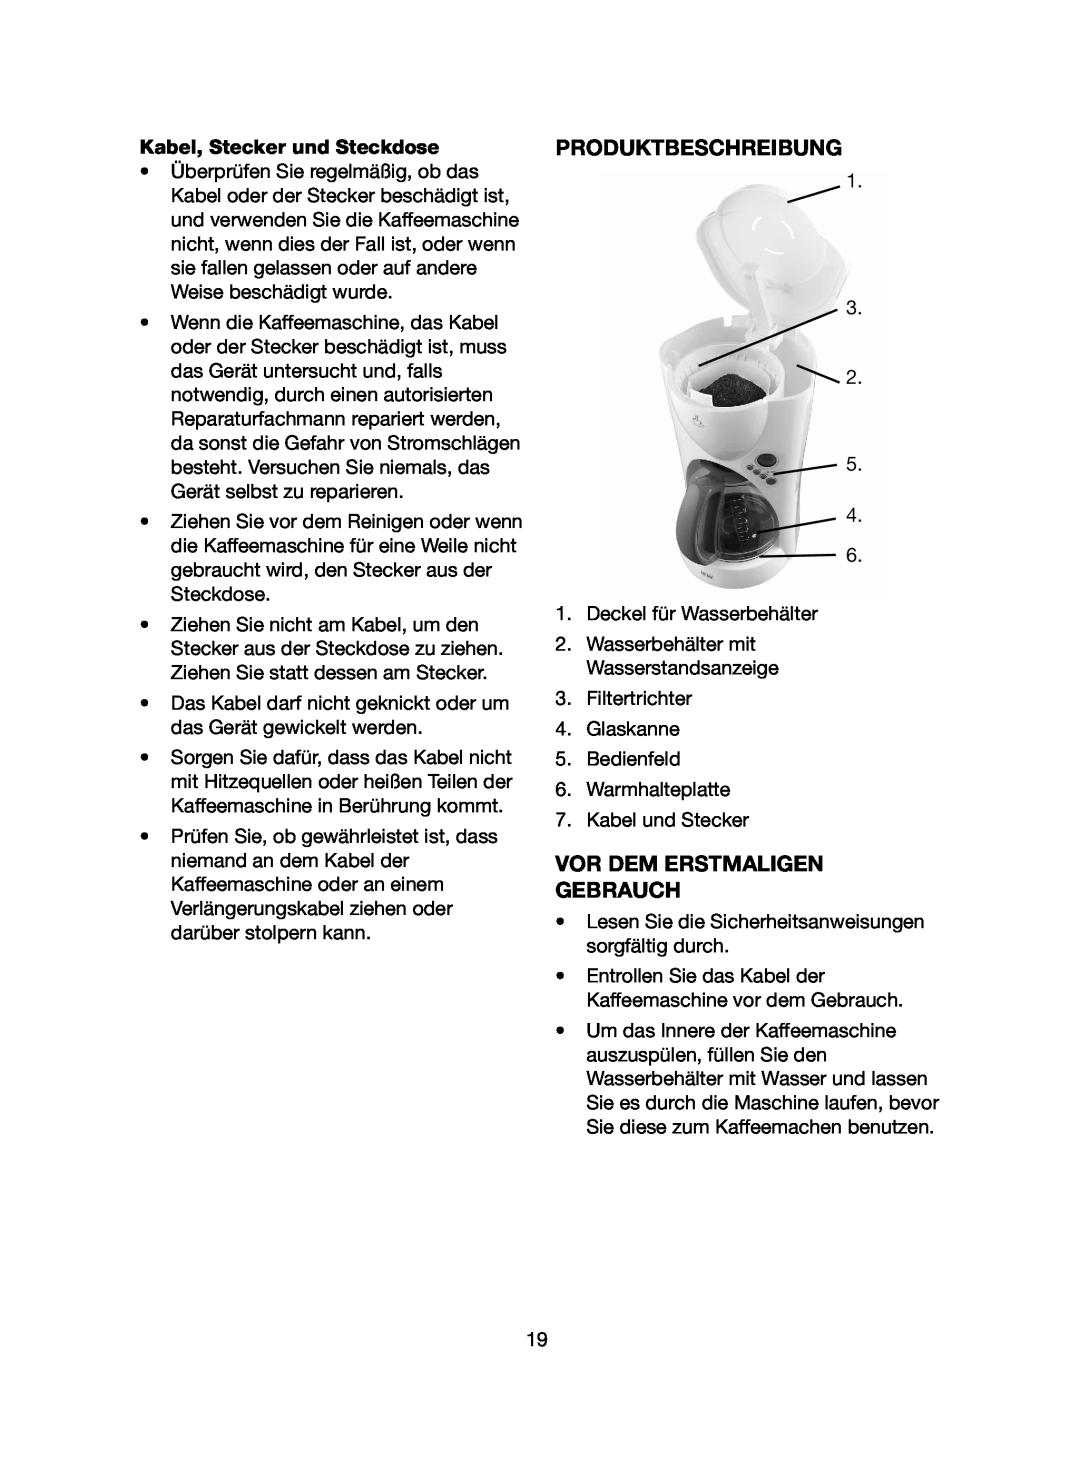 Melissa 745-183 manual Produktbeschreibung, Vor Dem Erstmaligen Gebrauch, Kabel, Stecker und Steckdose 